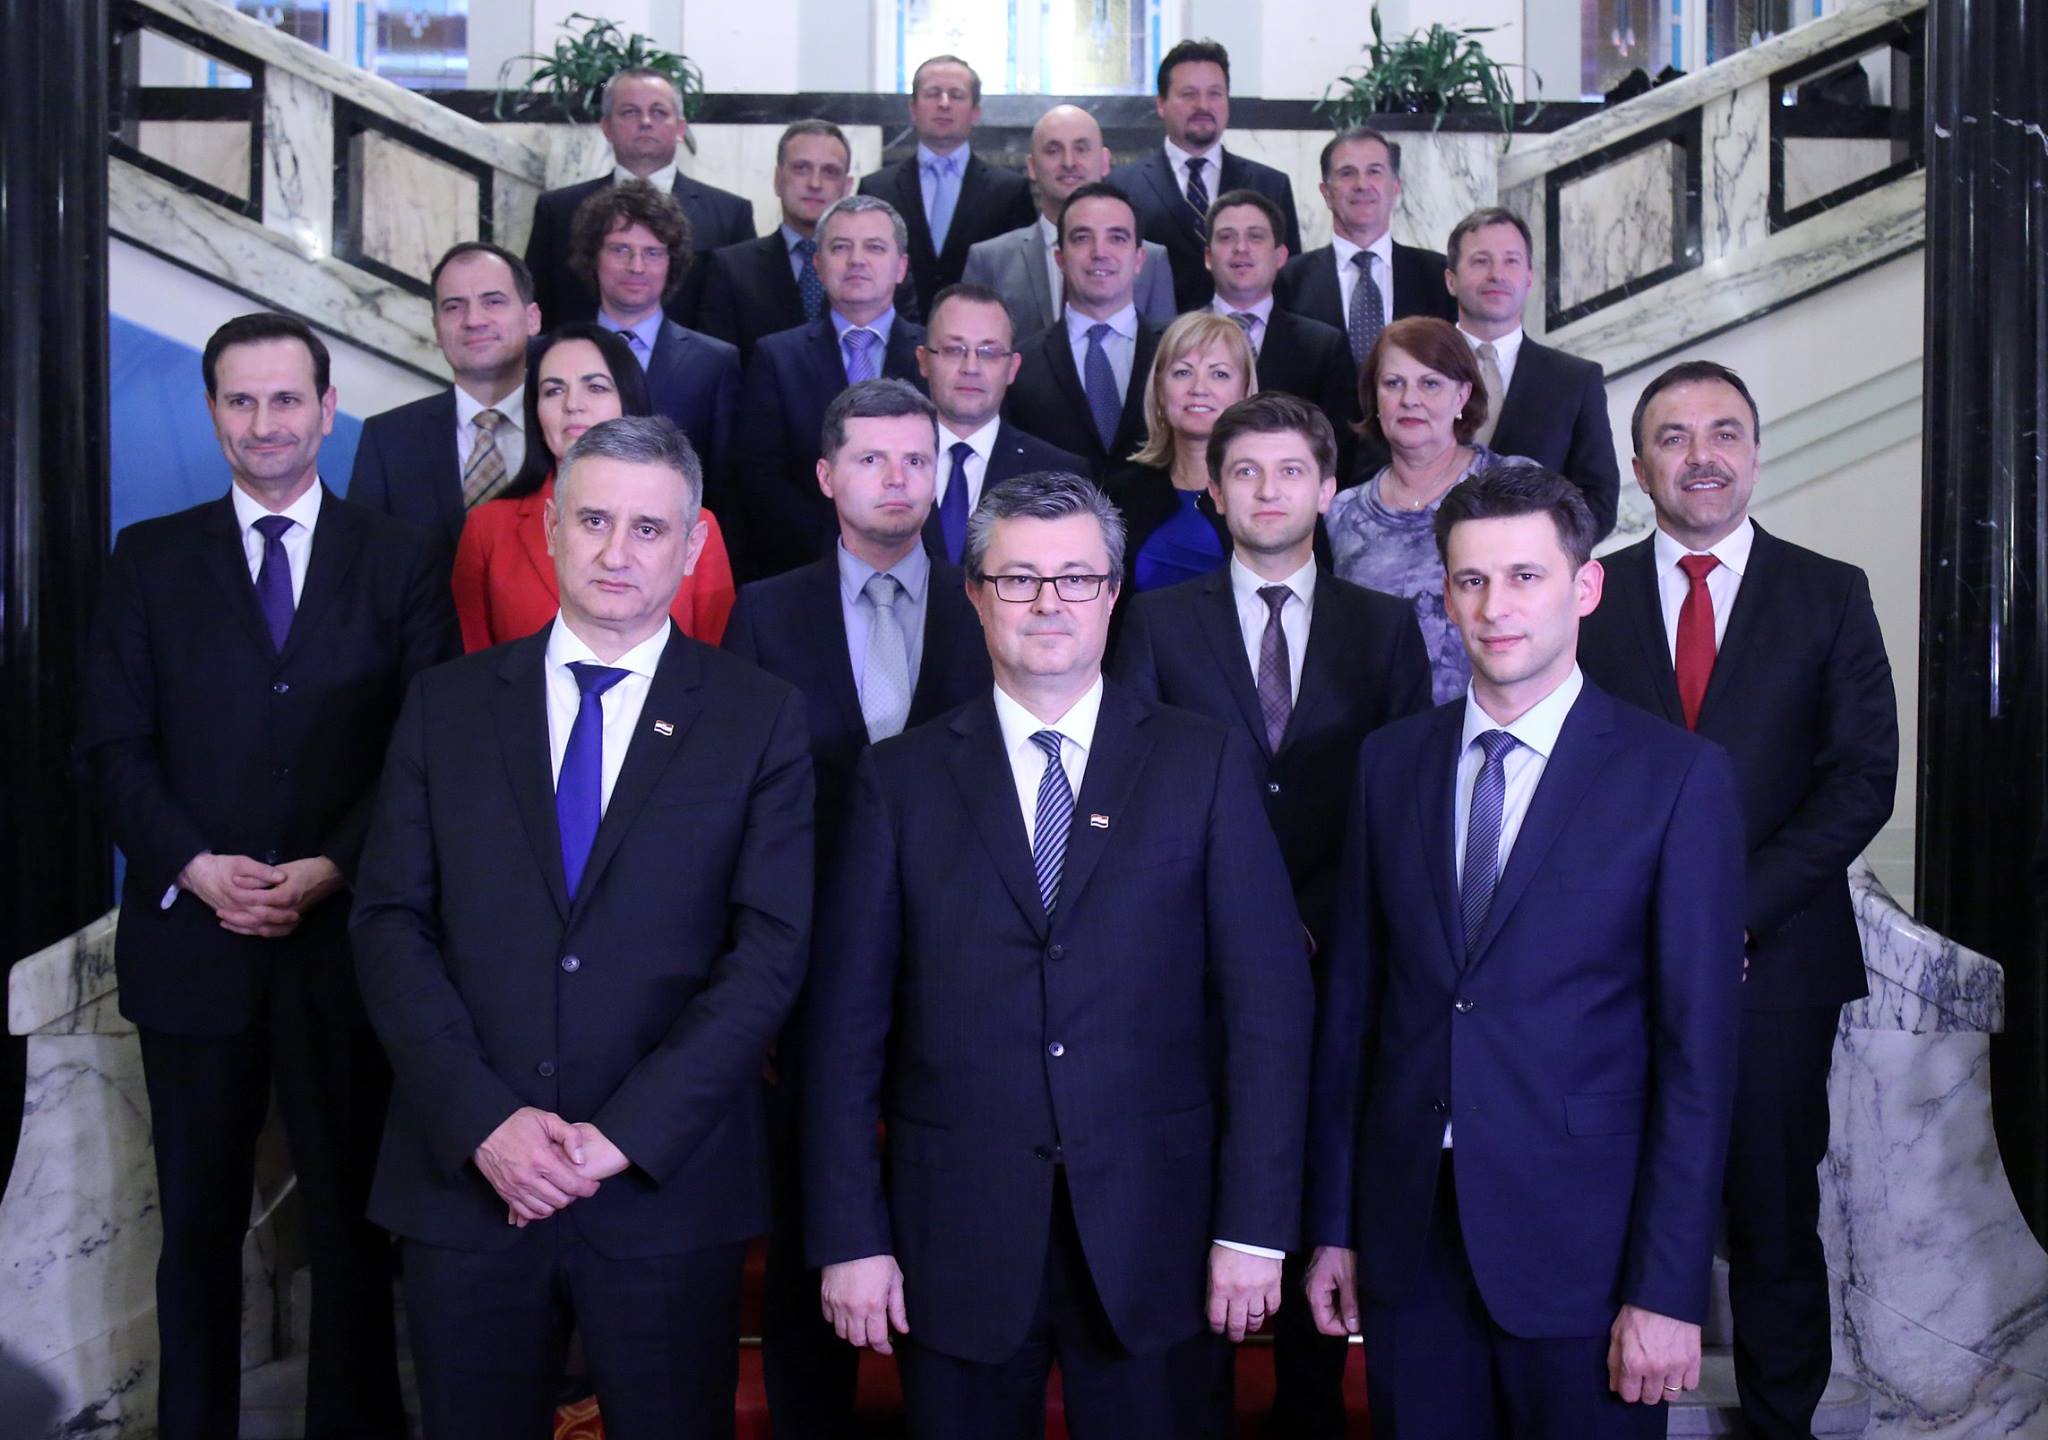 Tims Team ist damit die 11. Regierung Kroatiens und Tihomir Oreskovic der 13. Premier in der noch jungen Demokratie an der Adria.